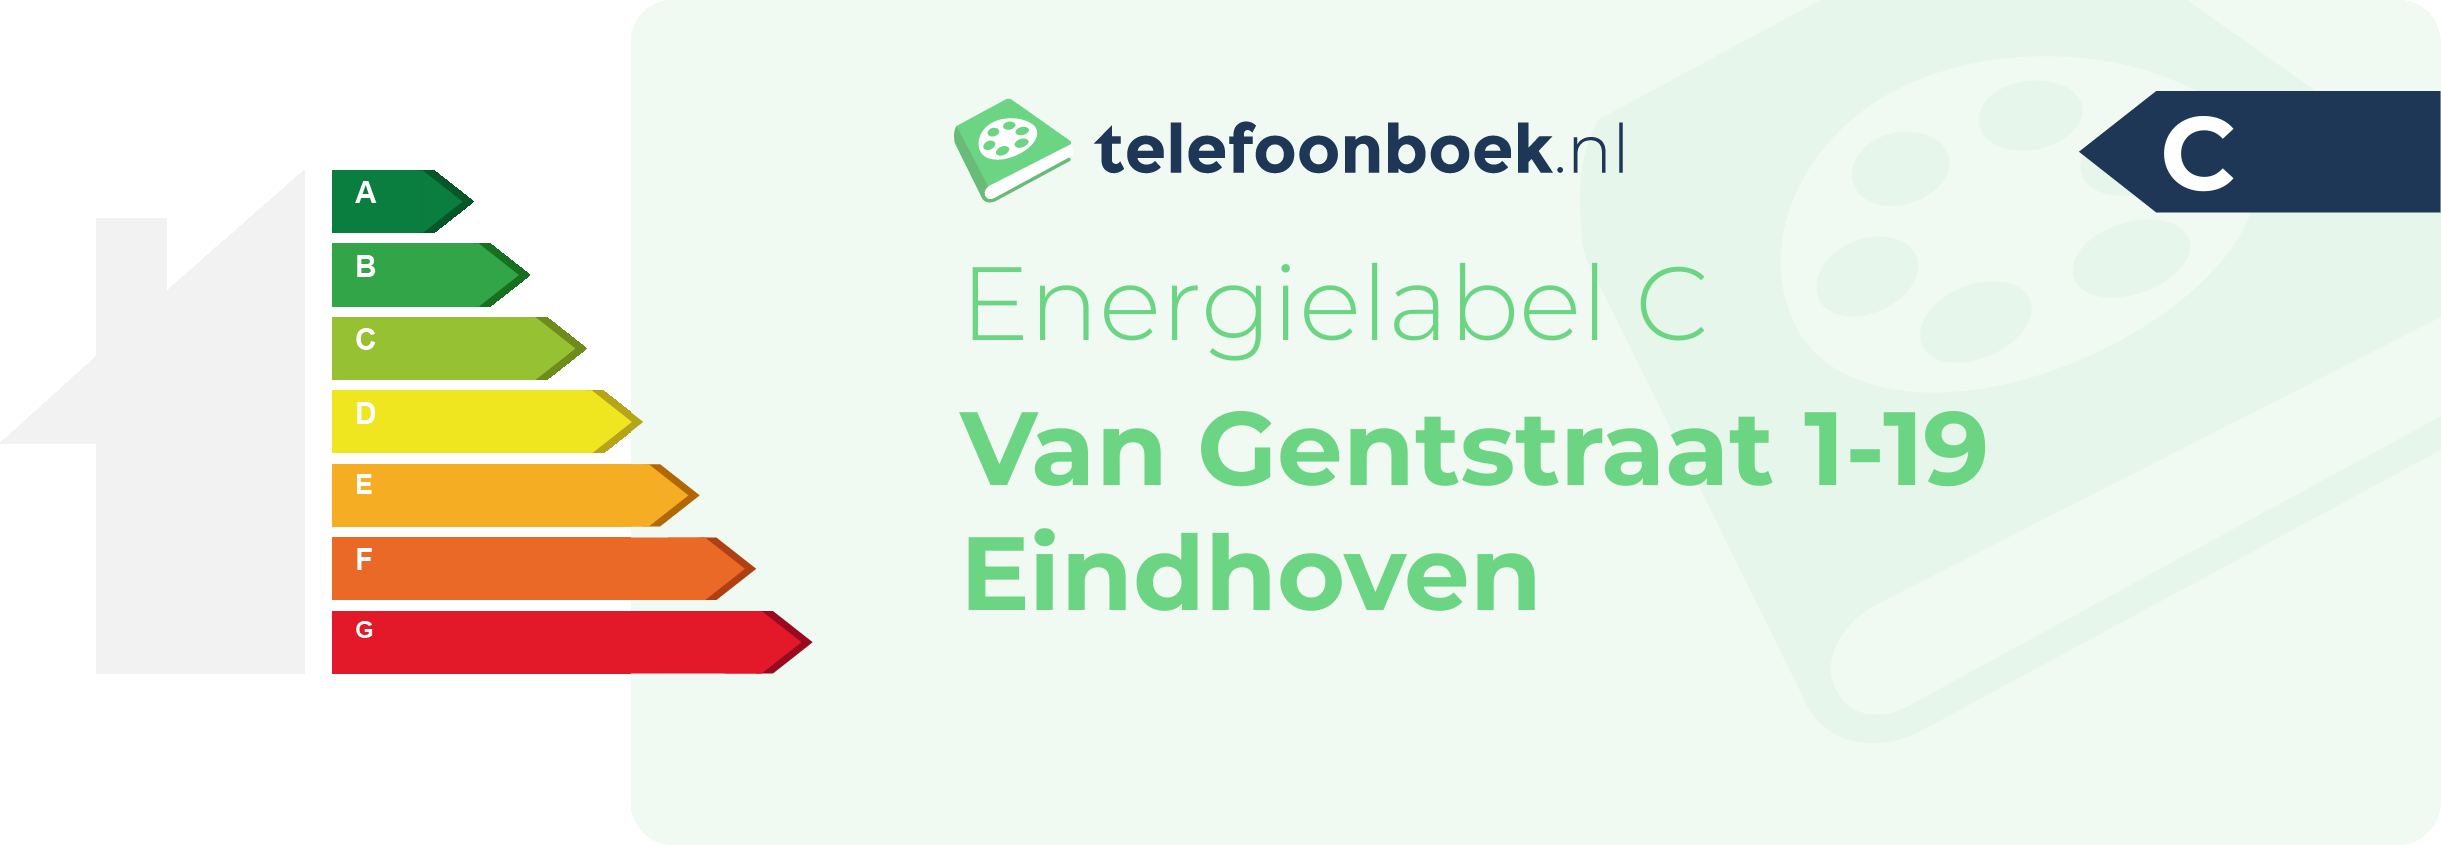 Energielabel Van Gentstraat 1-19 Eindhoven